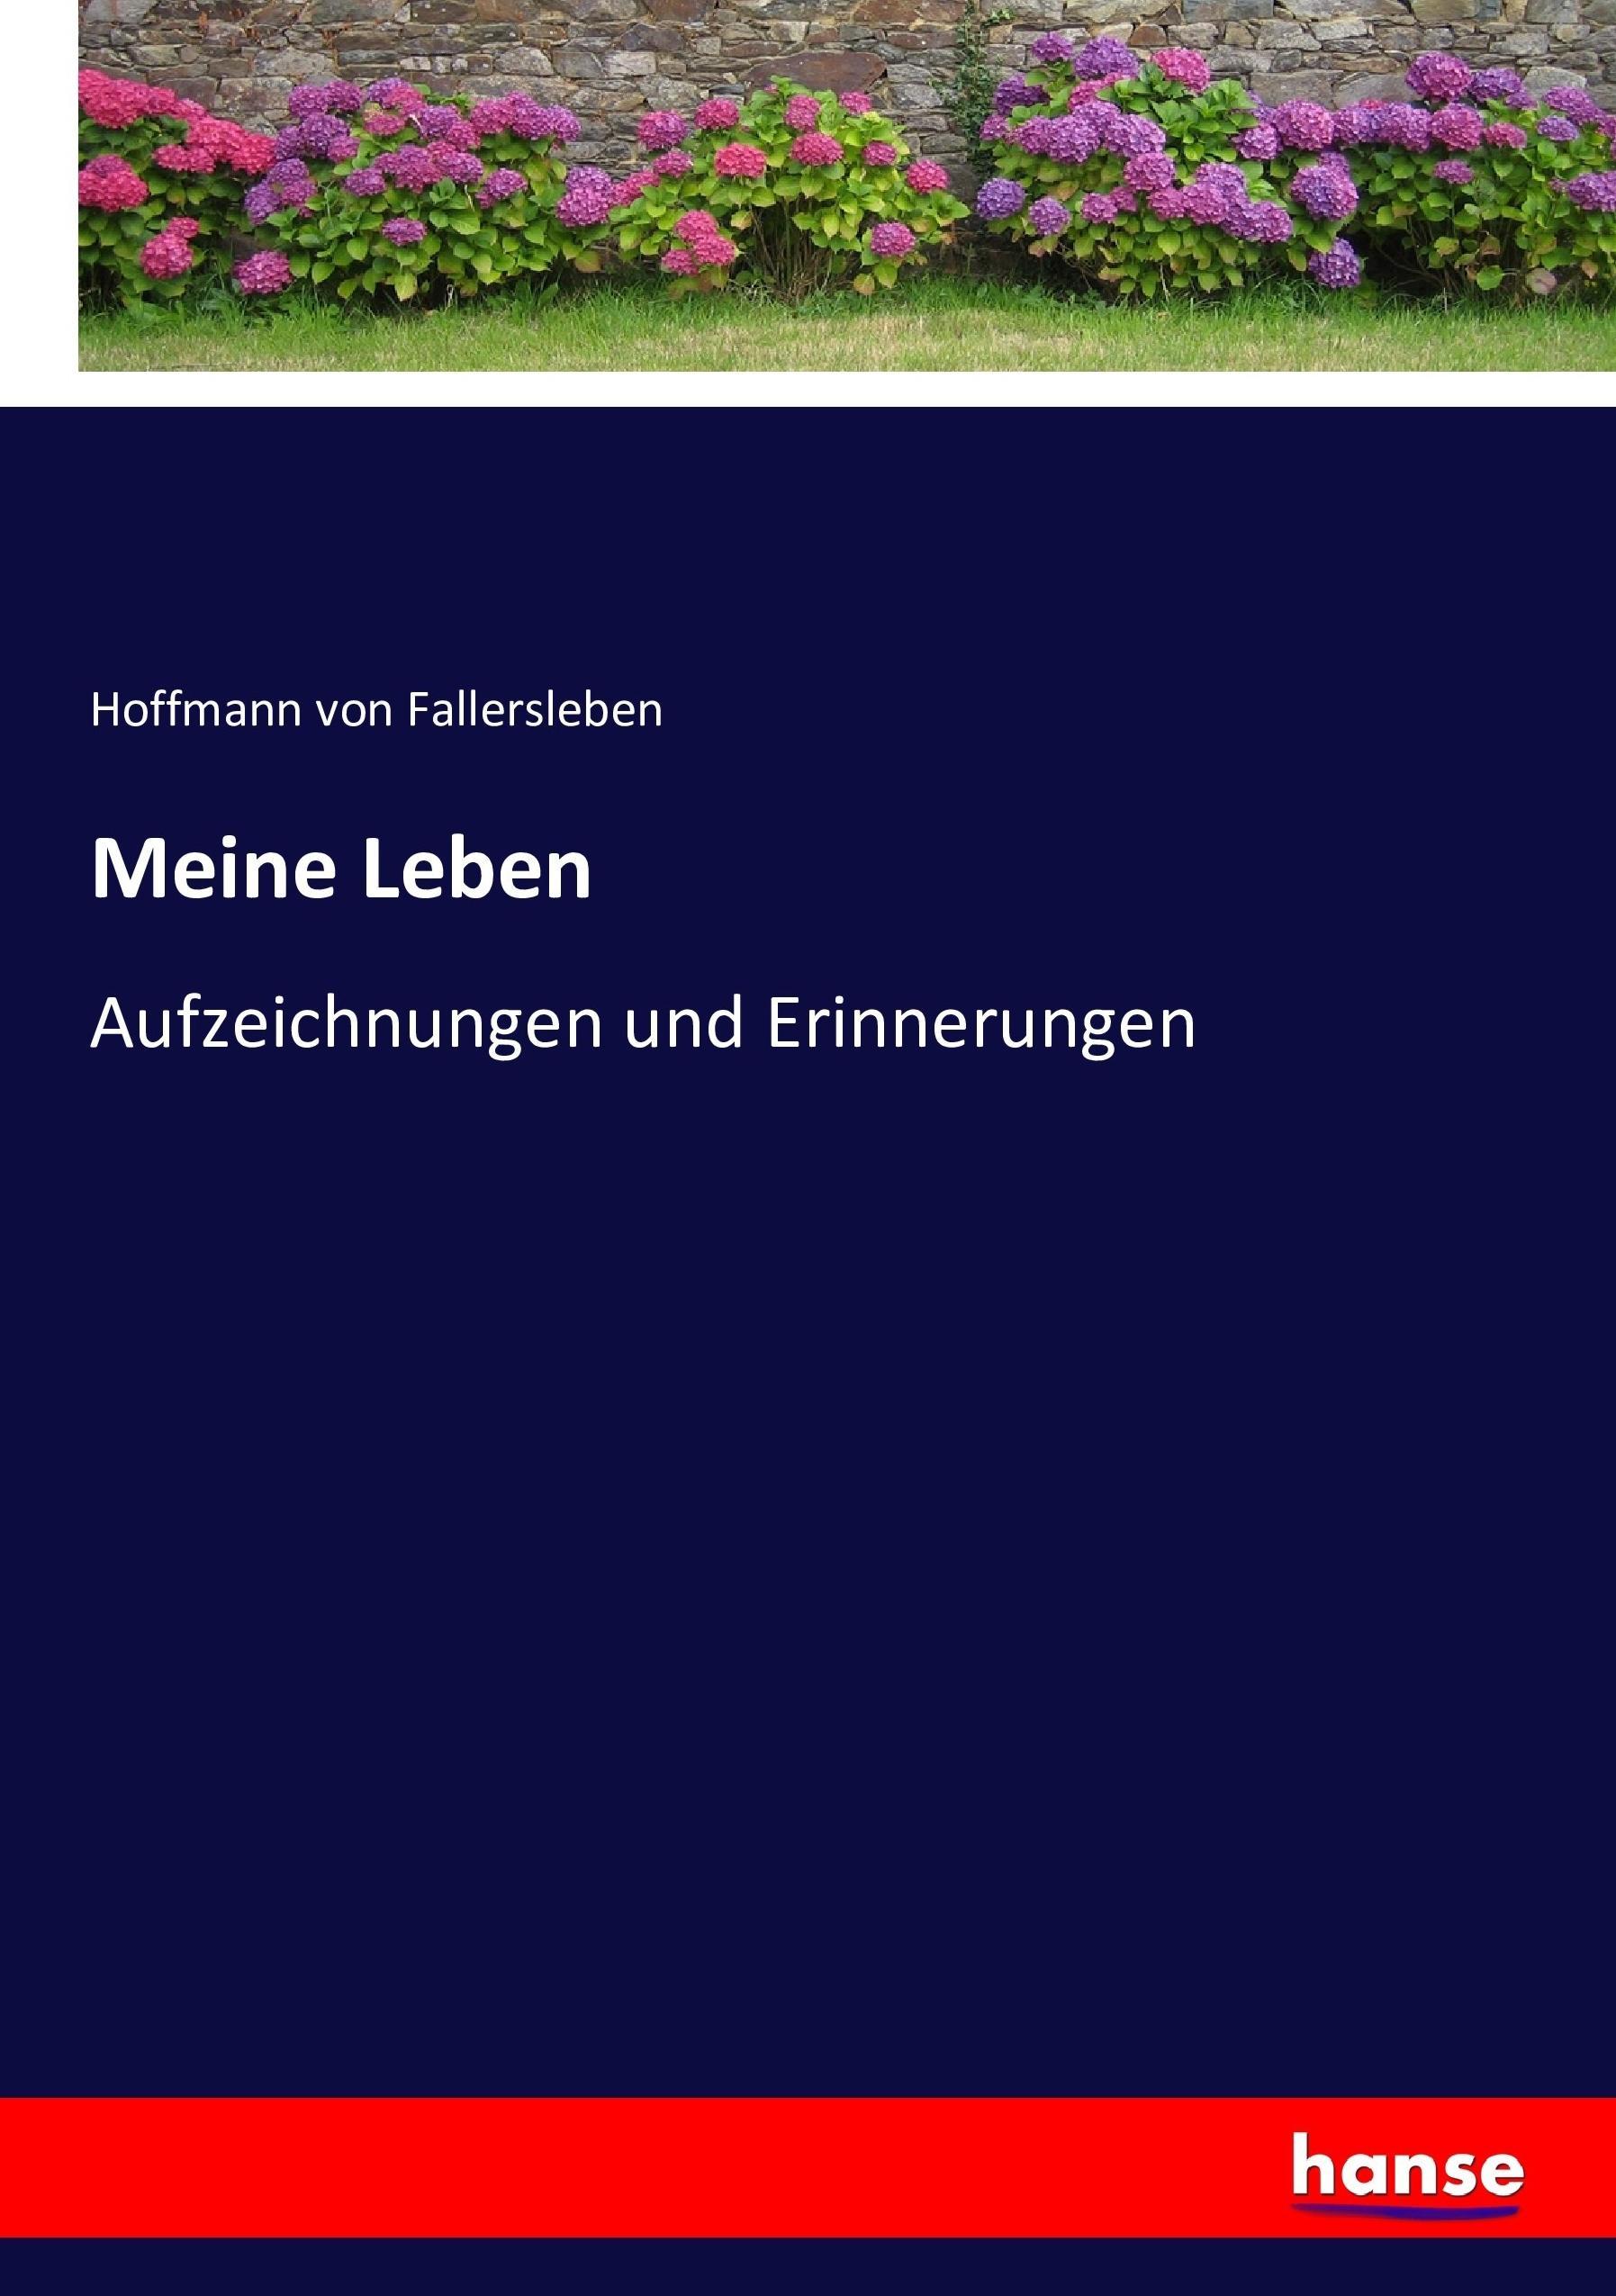 Meine Leben | Aufzeichnungen und Erinnerungen | Hoffmann Von Fallersleben | Taschenbuch | Paperback | 396 S. | Deutsch | 2017 | hansebooks | EAN 9783743620643 - Fallersleben, Hoffmann Von